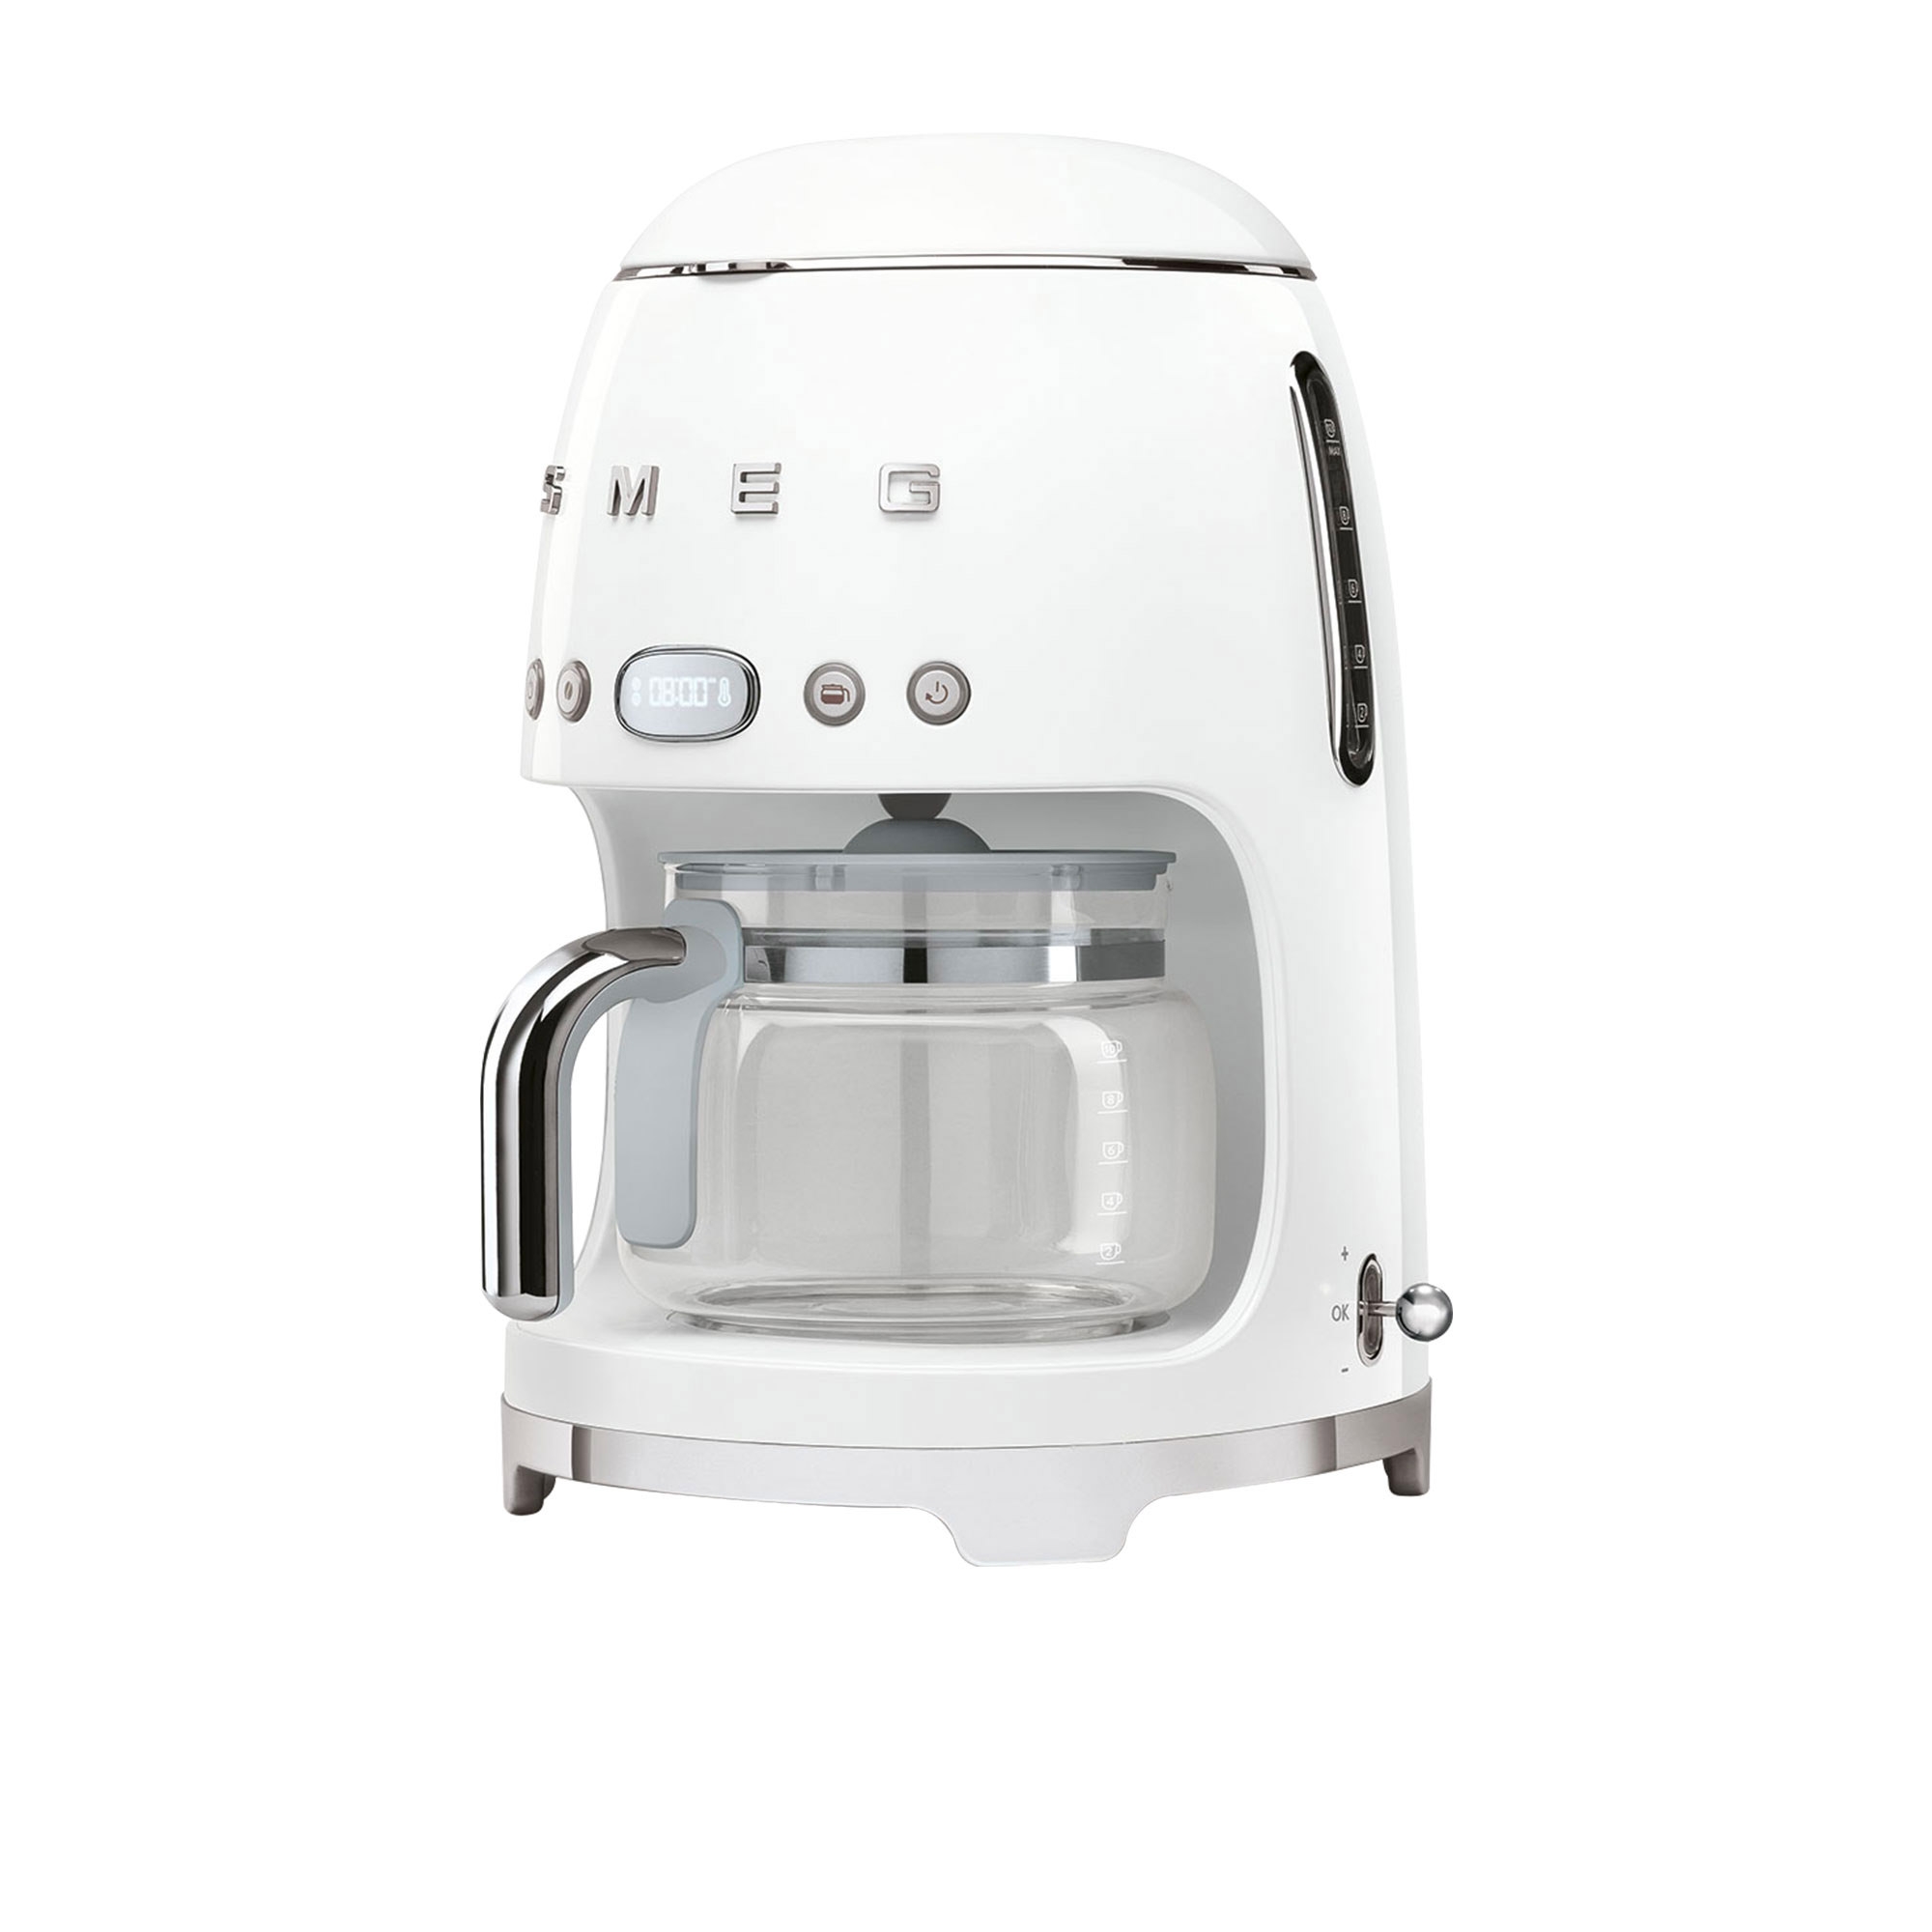 Smeg 50's Retro Style Drip Filter Coffee Machine White Image 2